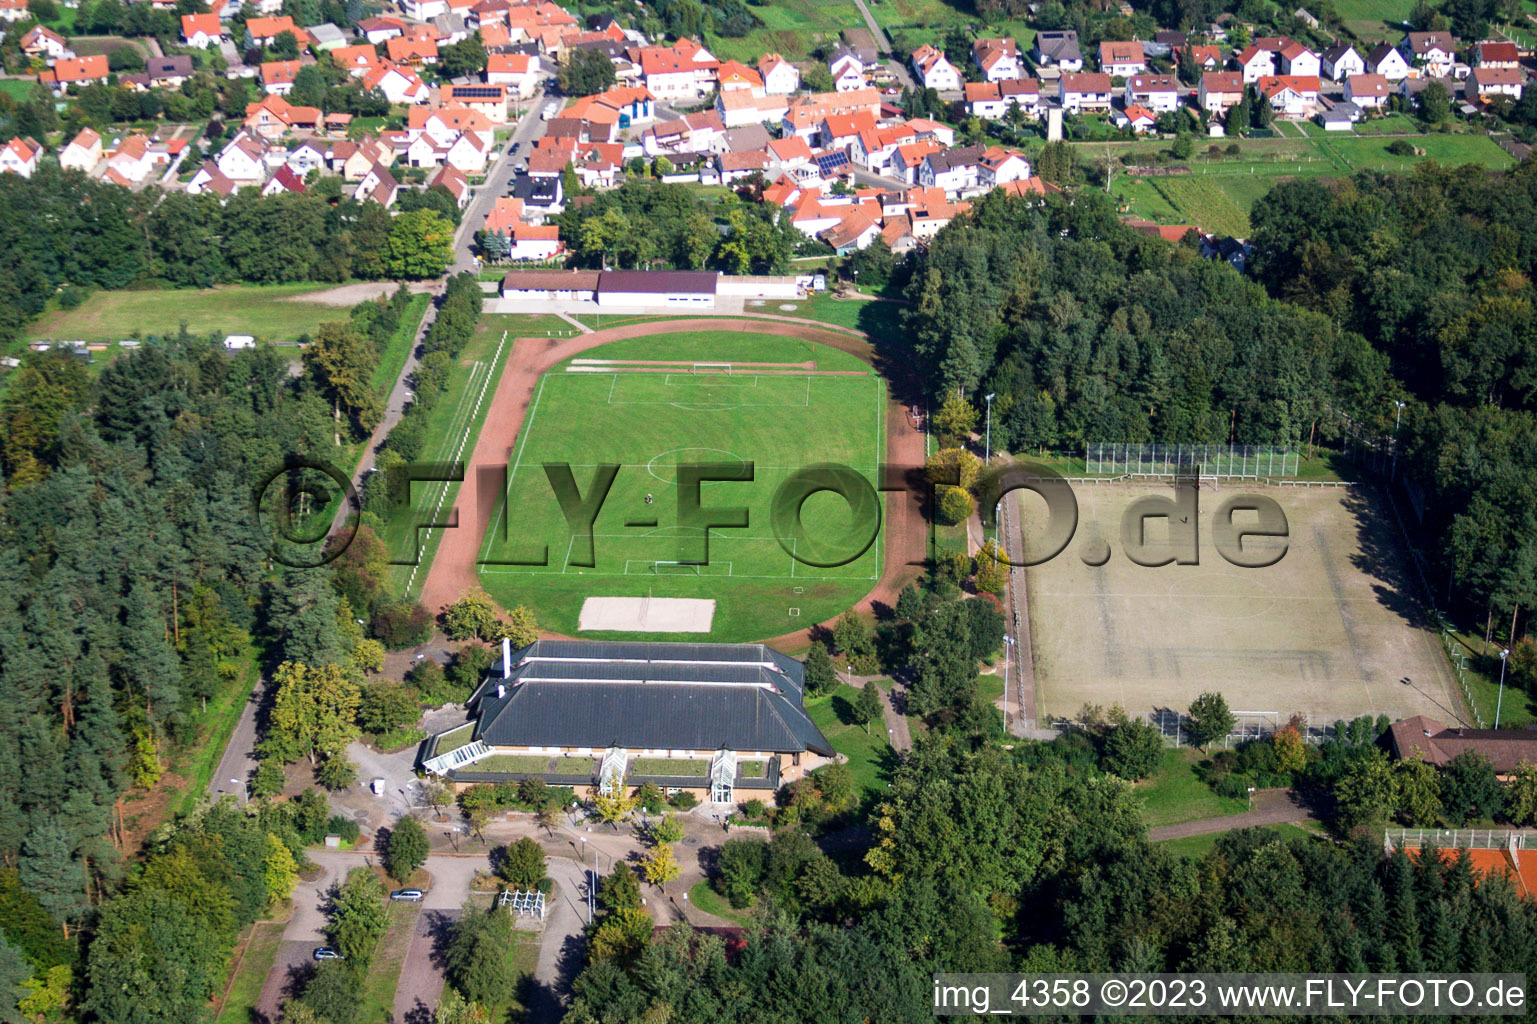 Sports area TUS Schaidt in the district Schaidt in Wörth am Rhein in the state Rhineland-Palatinate, Germany